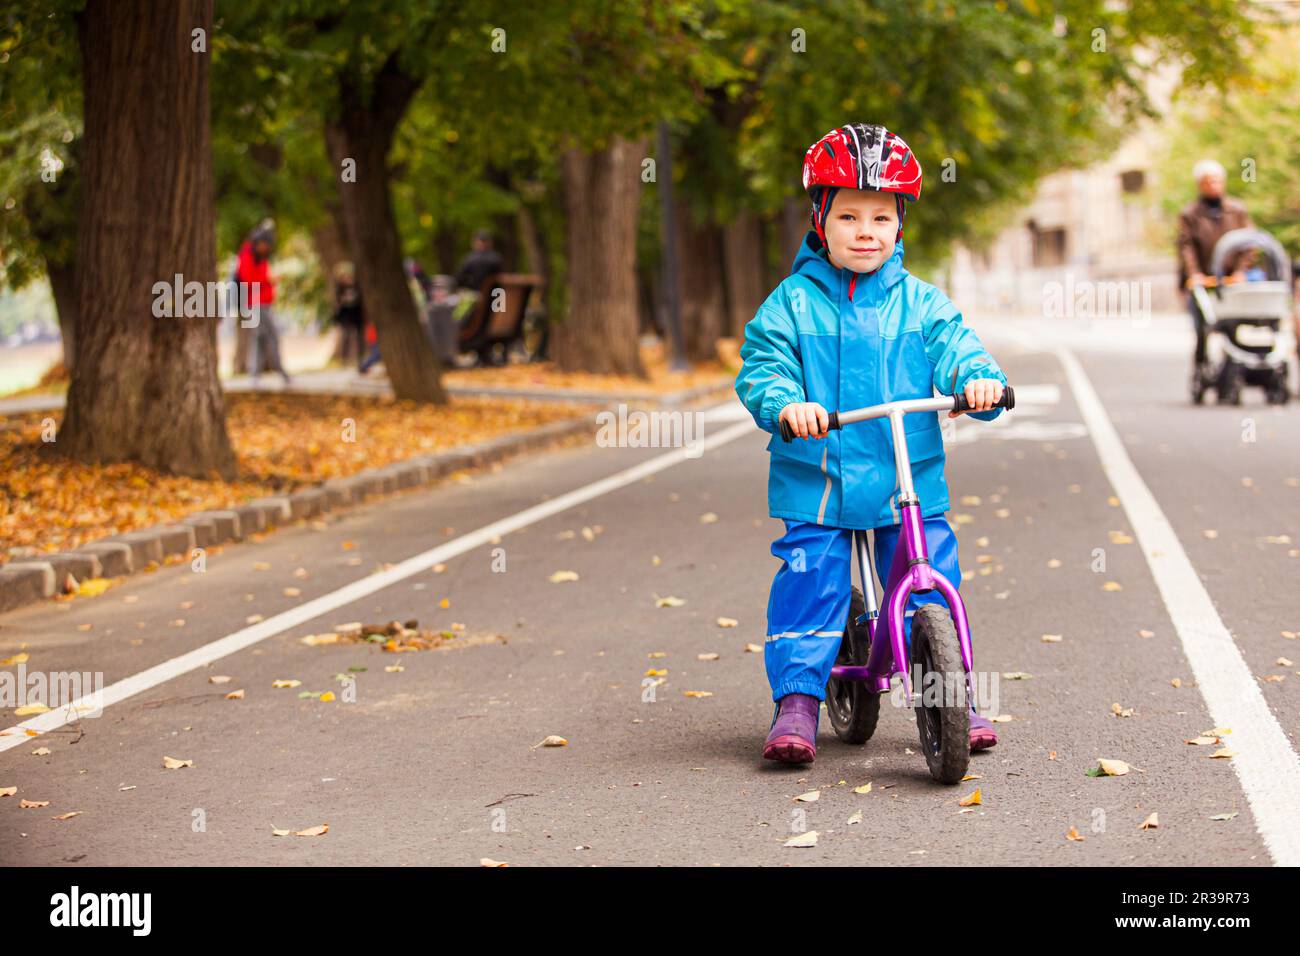 Petit garçon en vêtements bleus d'automne sur son vélo Banque D'Images